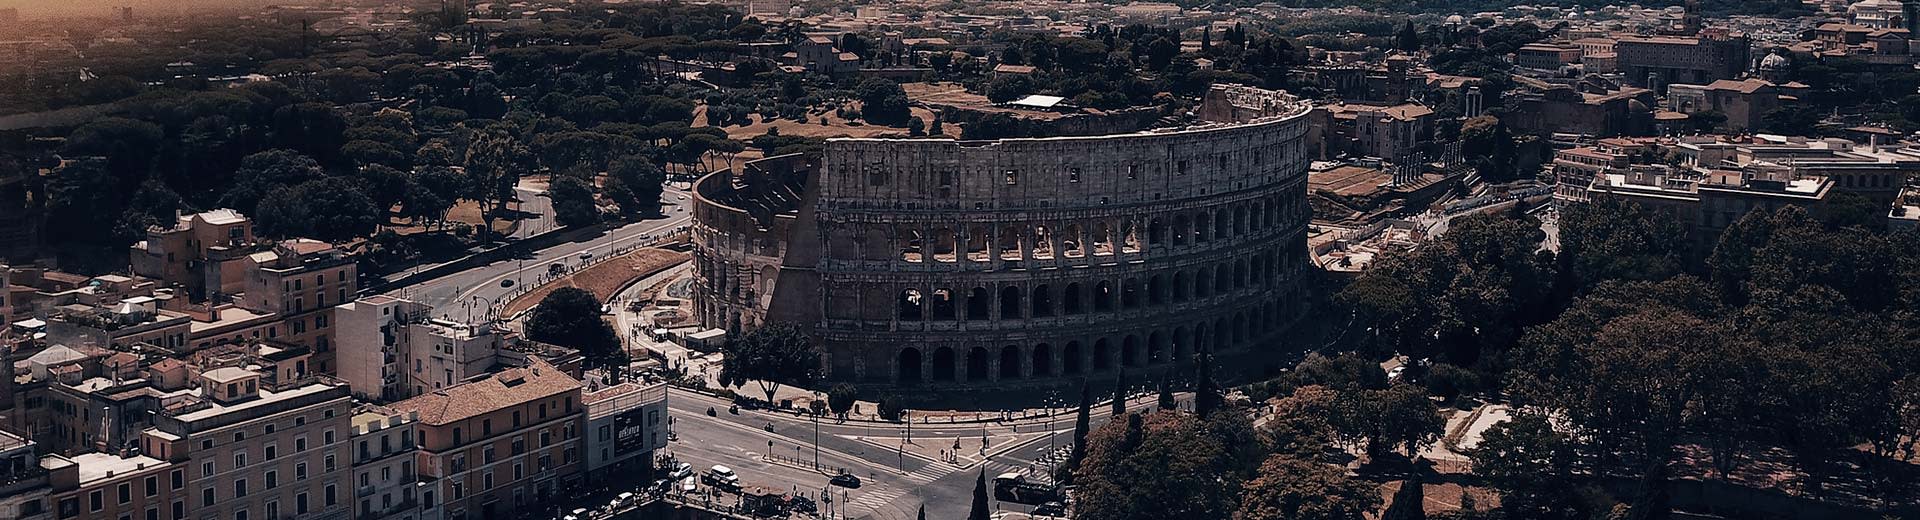 夕暮れ時や夜明けに照らされ、有名なローマのコロッセオが建物に囲まれ、そのイメージを支配している。